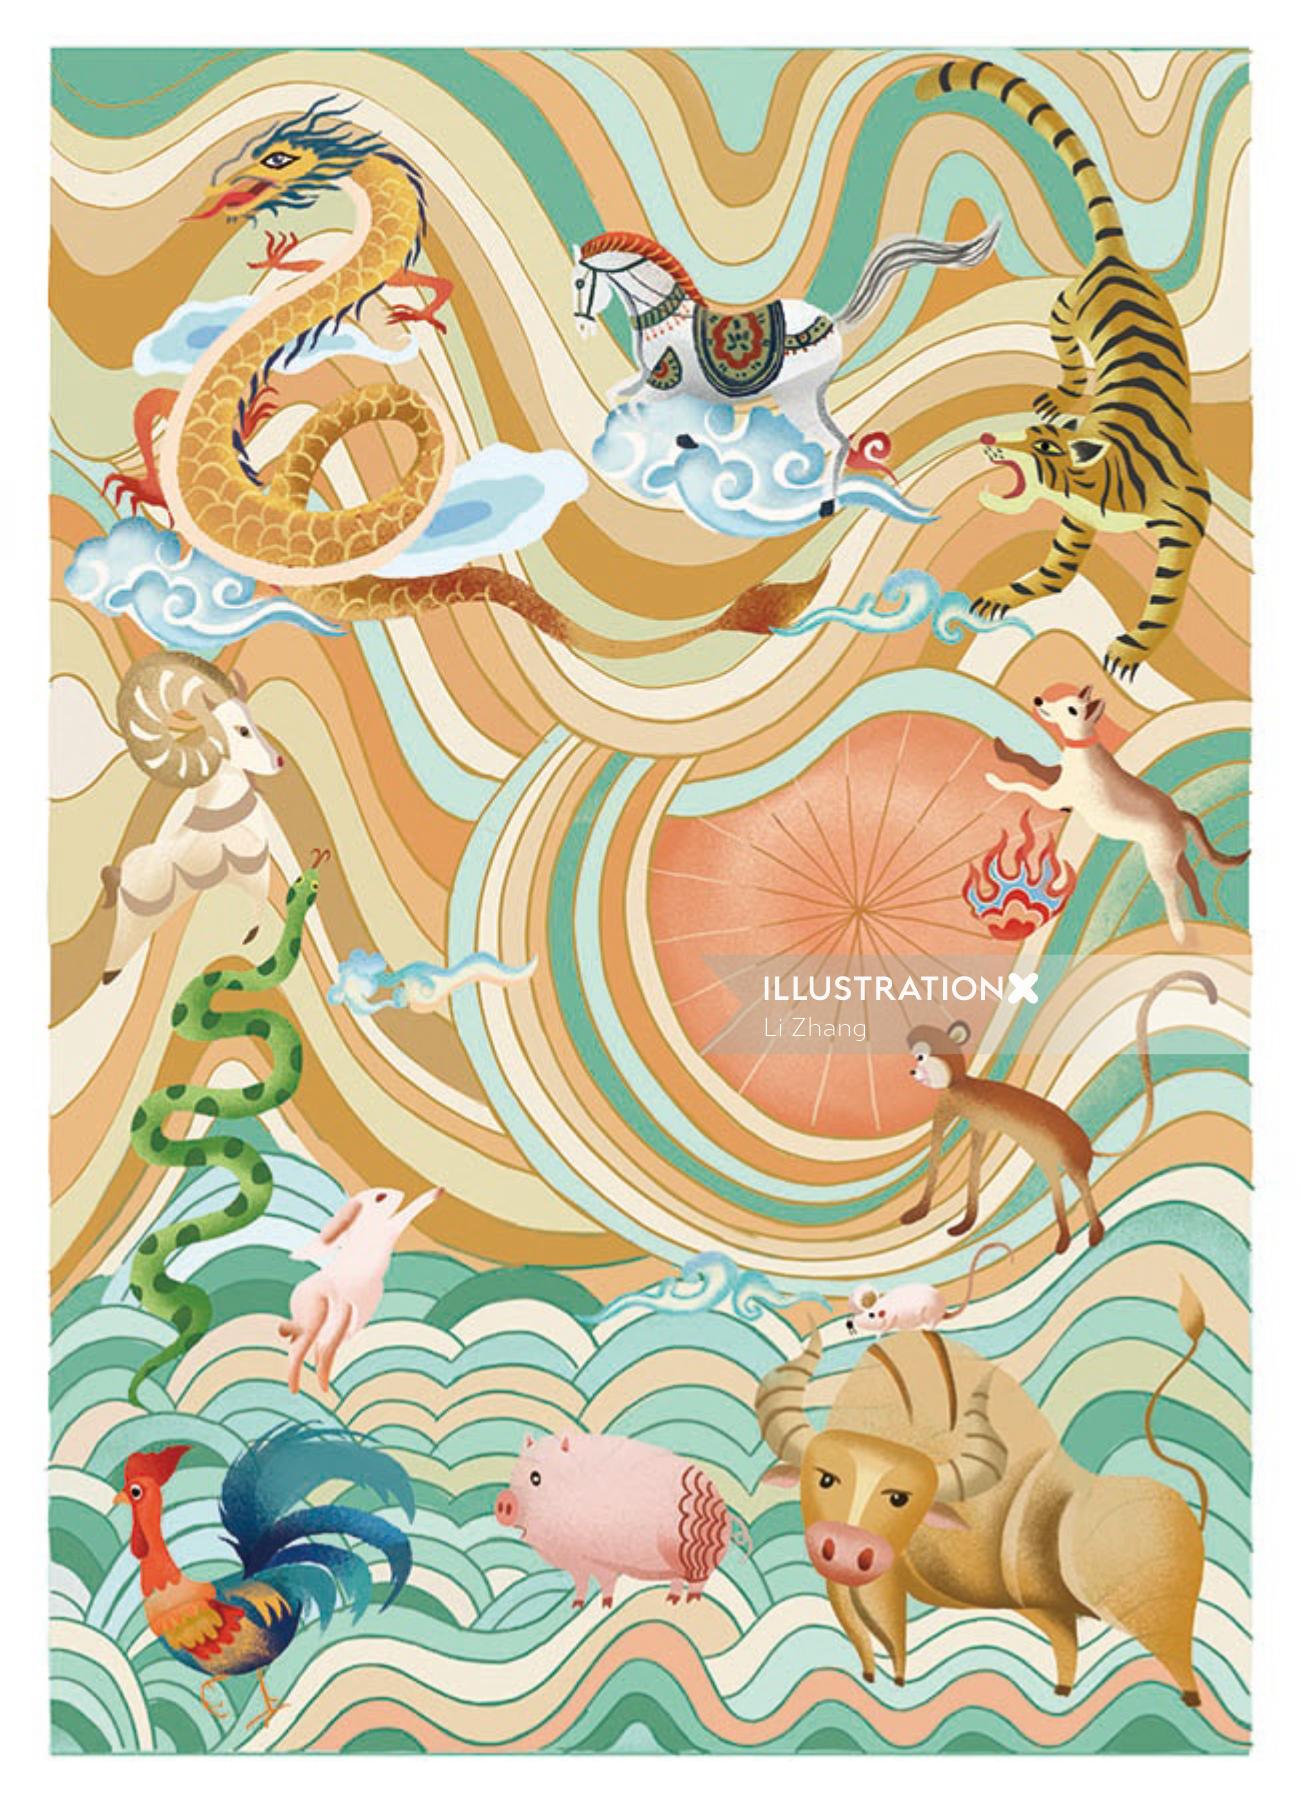 Arte da capa de um livro sobre o Zodíaco Chinês, ilustrado por Li Zhang